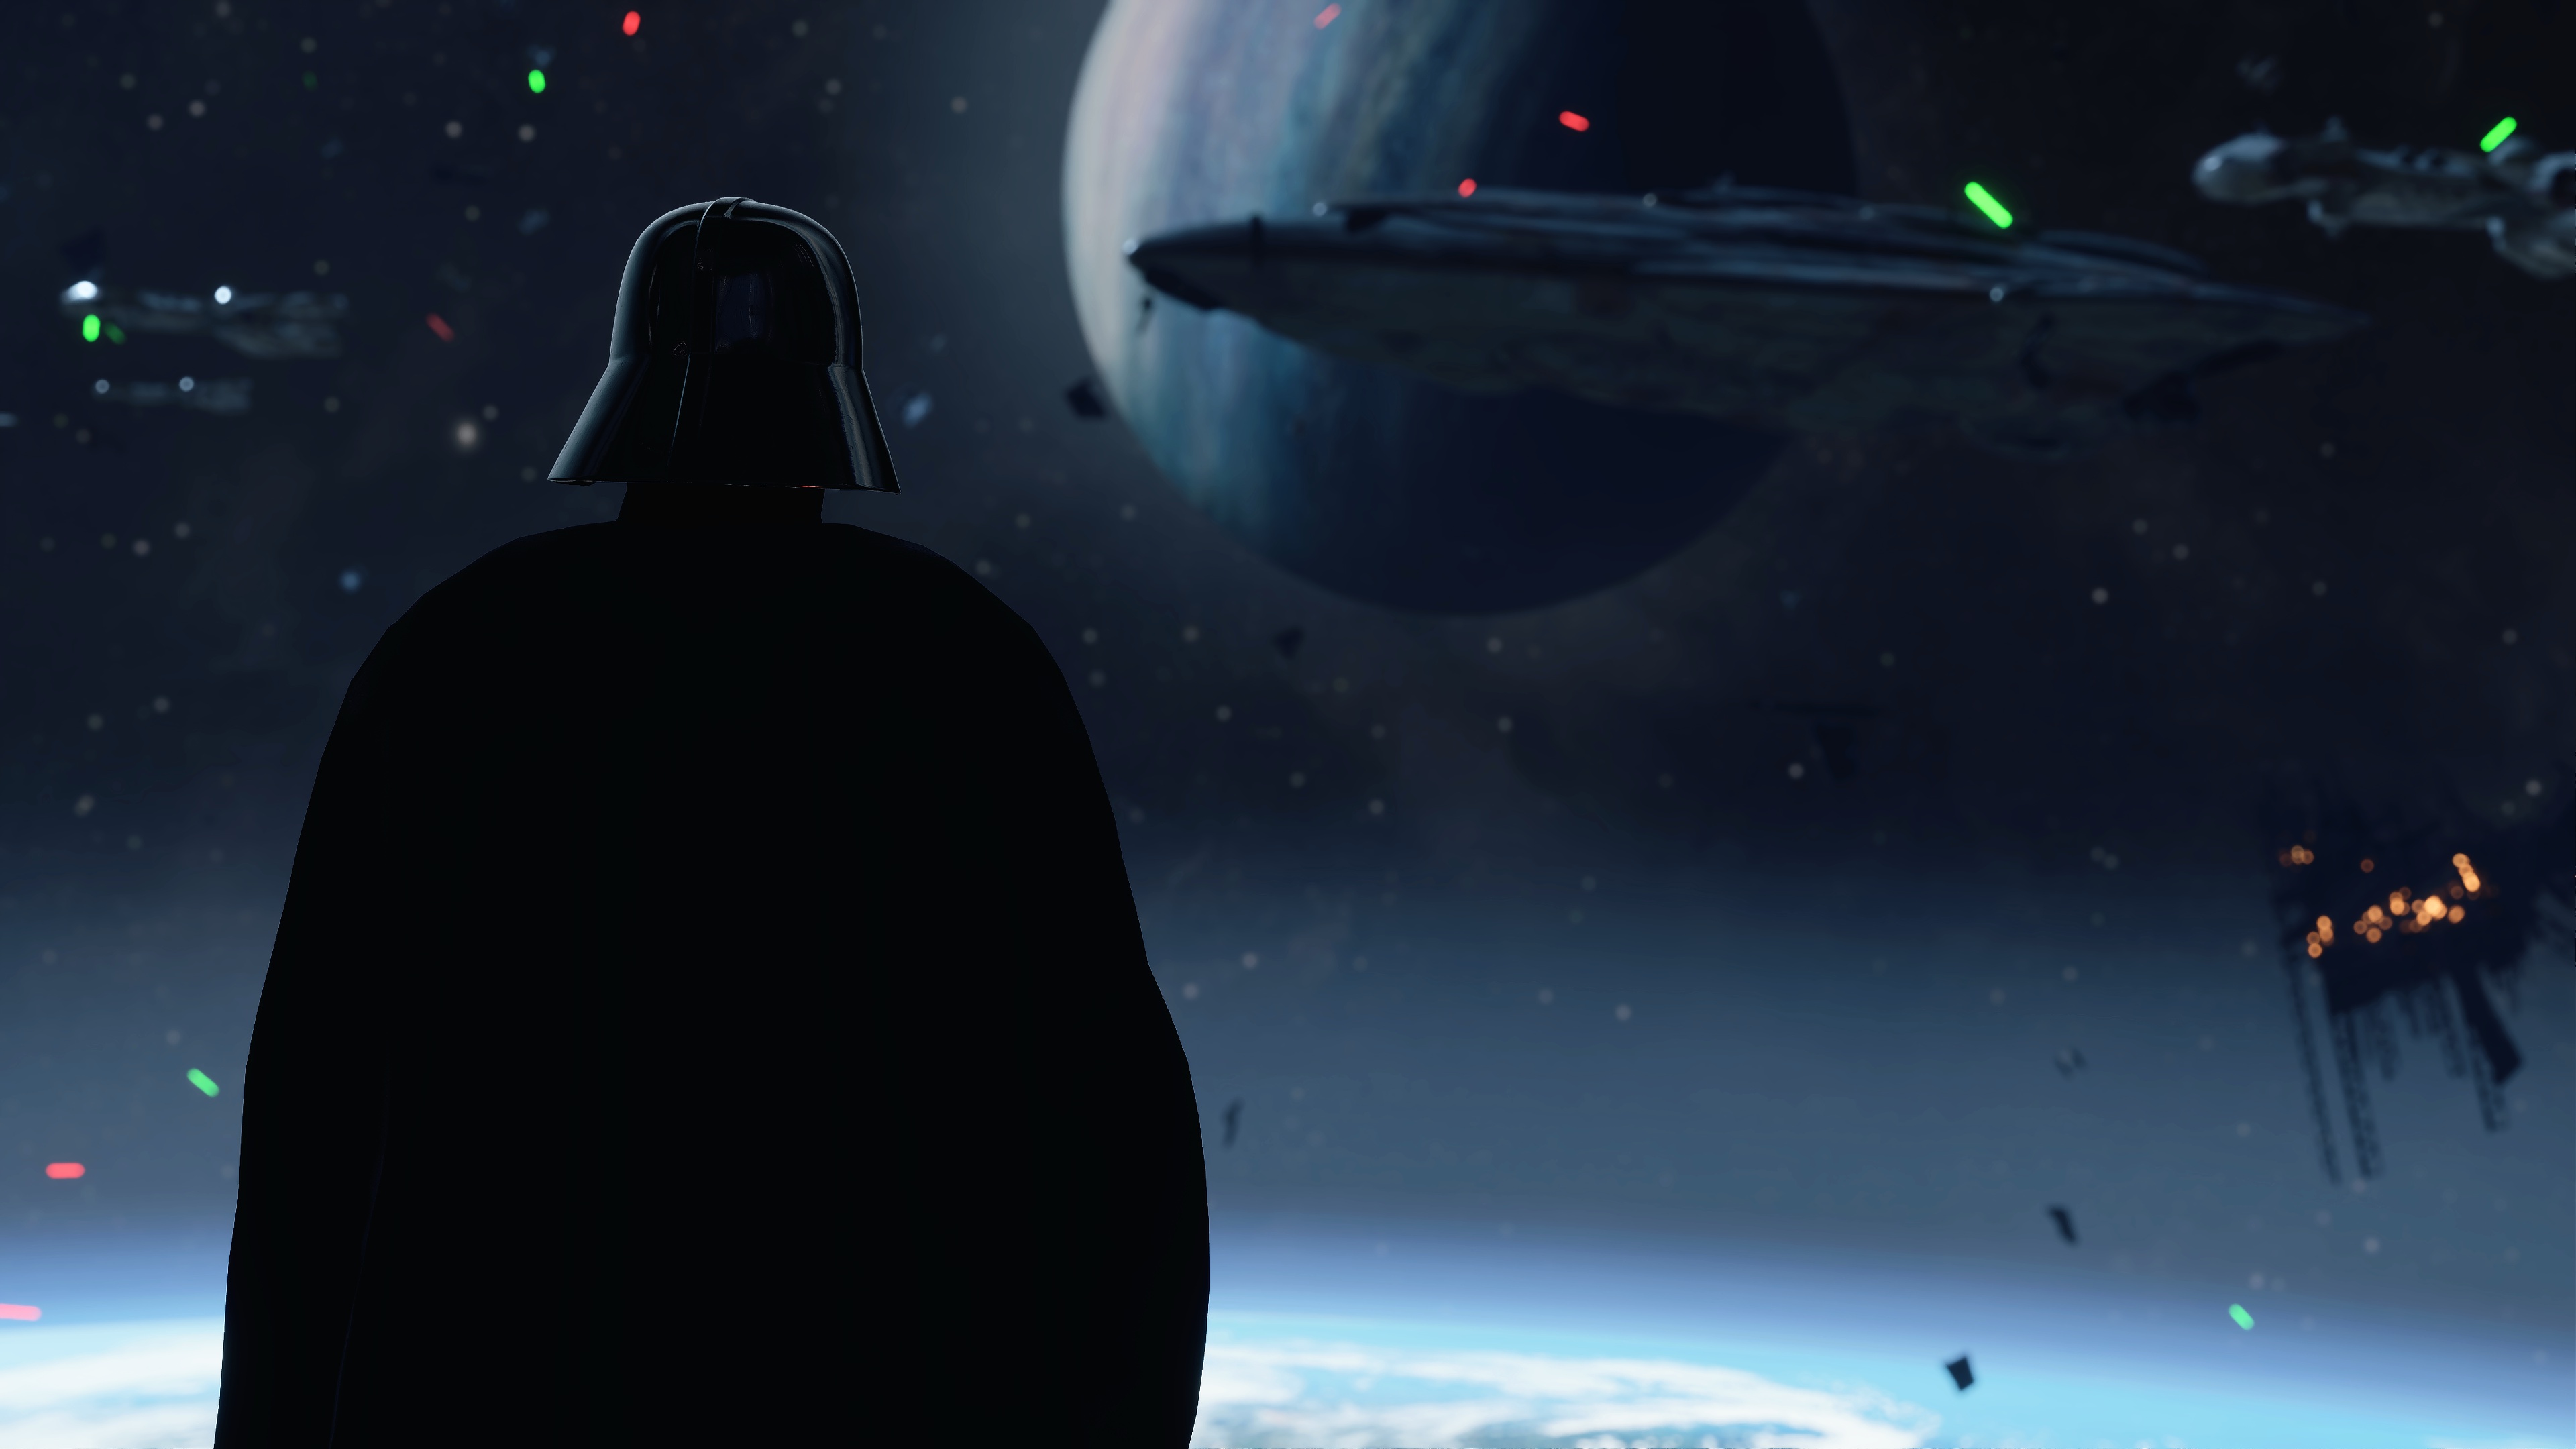 Darth Vader Star Wars Star Wars Battlefront Ii 2017 3840x2160